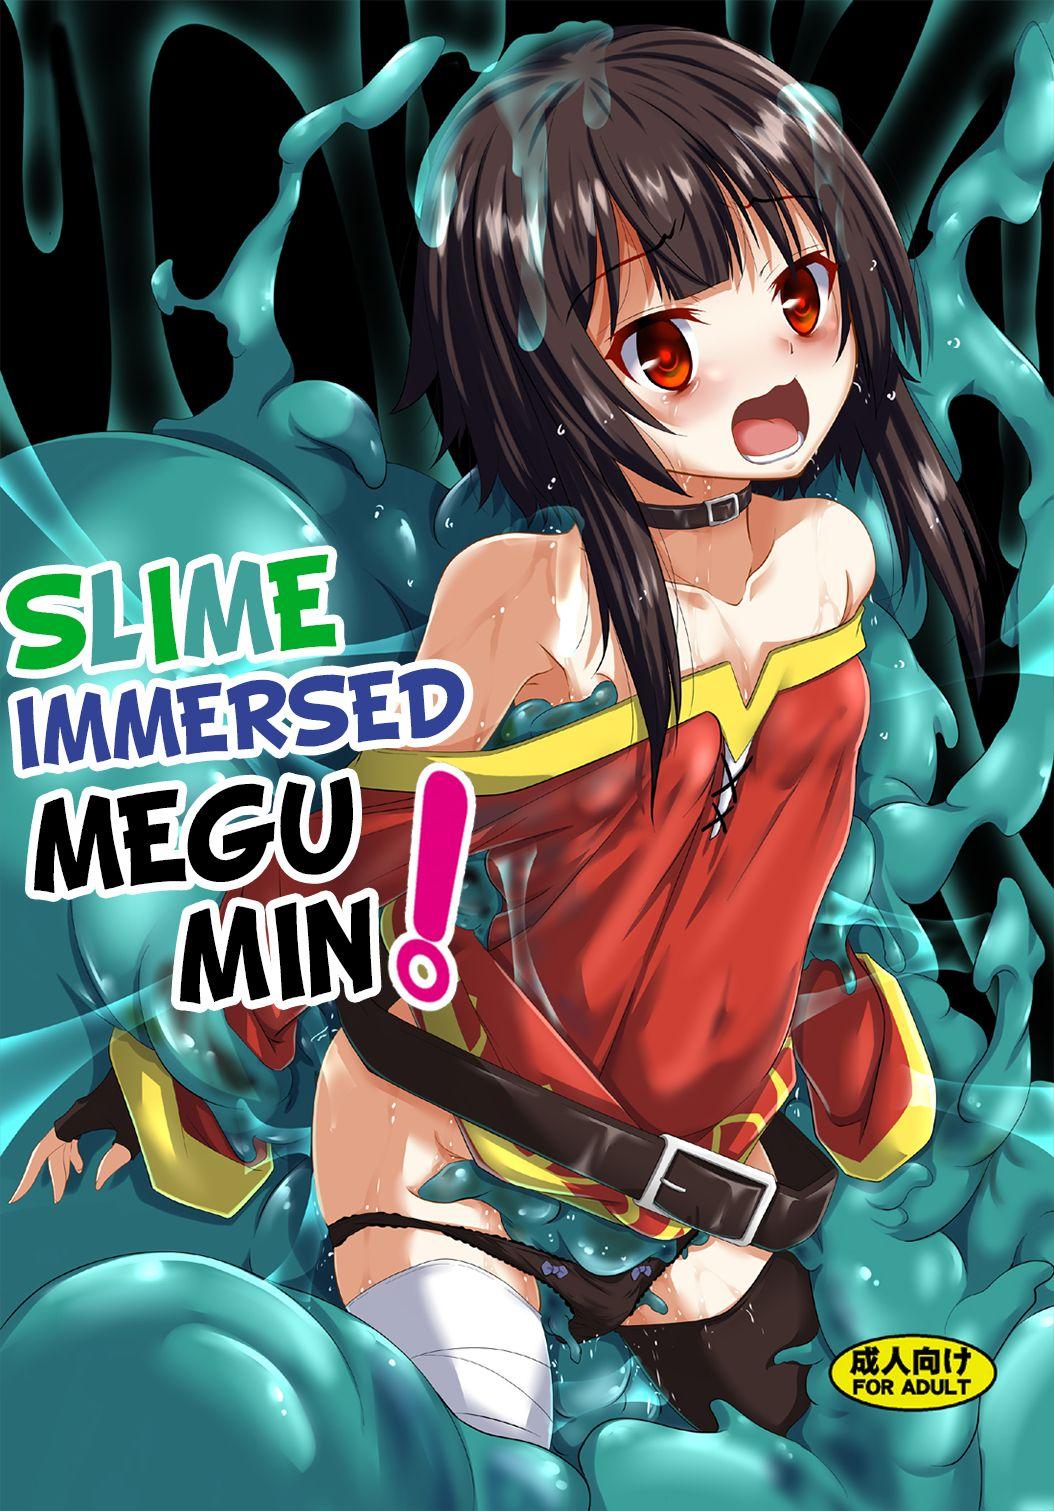 Megumin Slime-zuke! | Slime immersed Megumin! 0